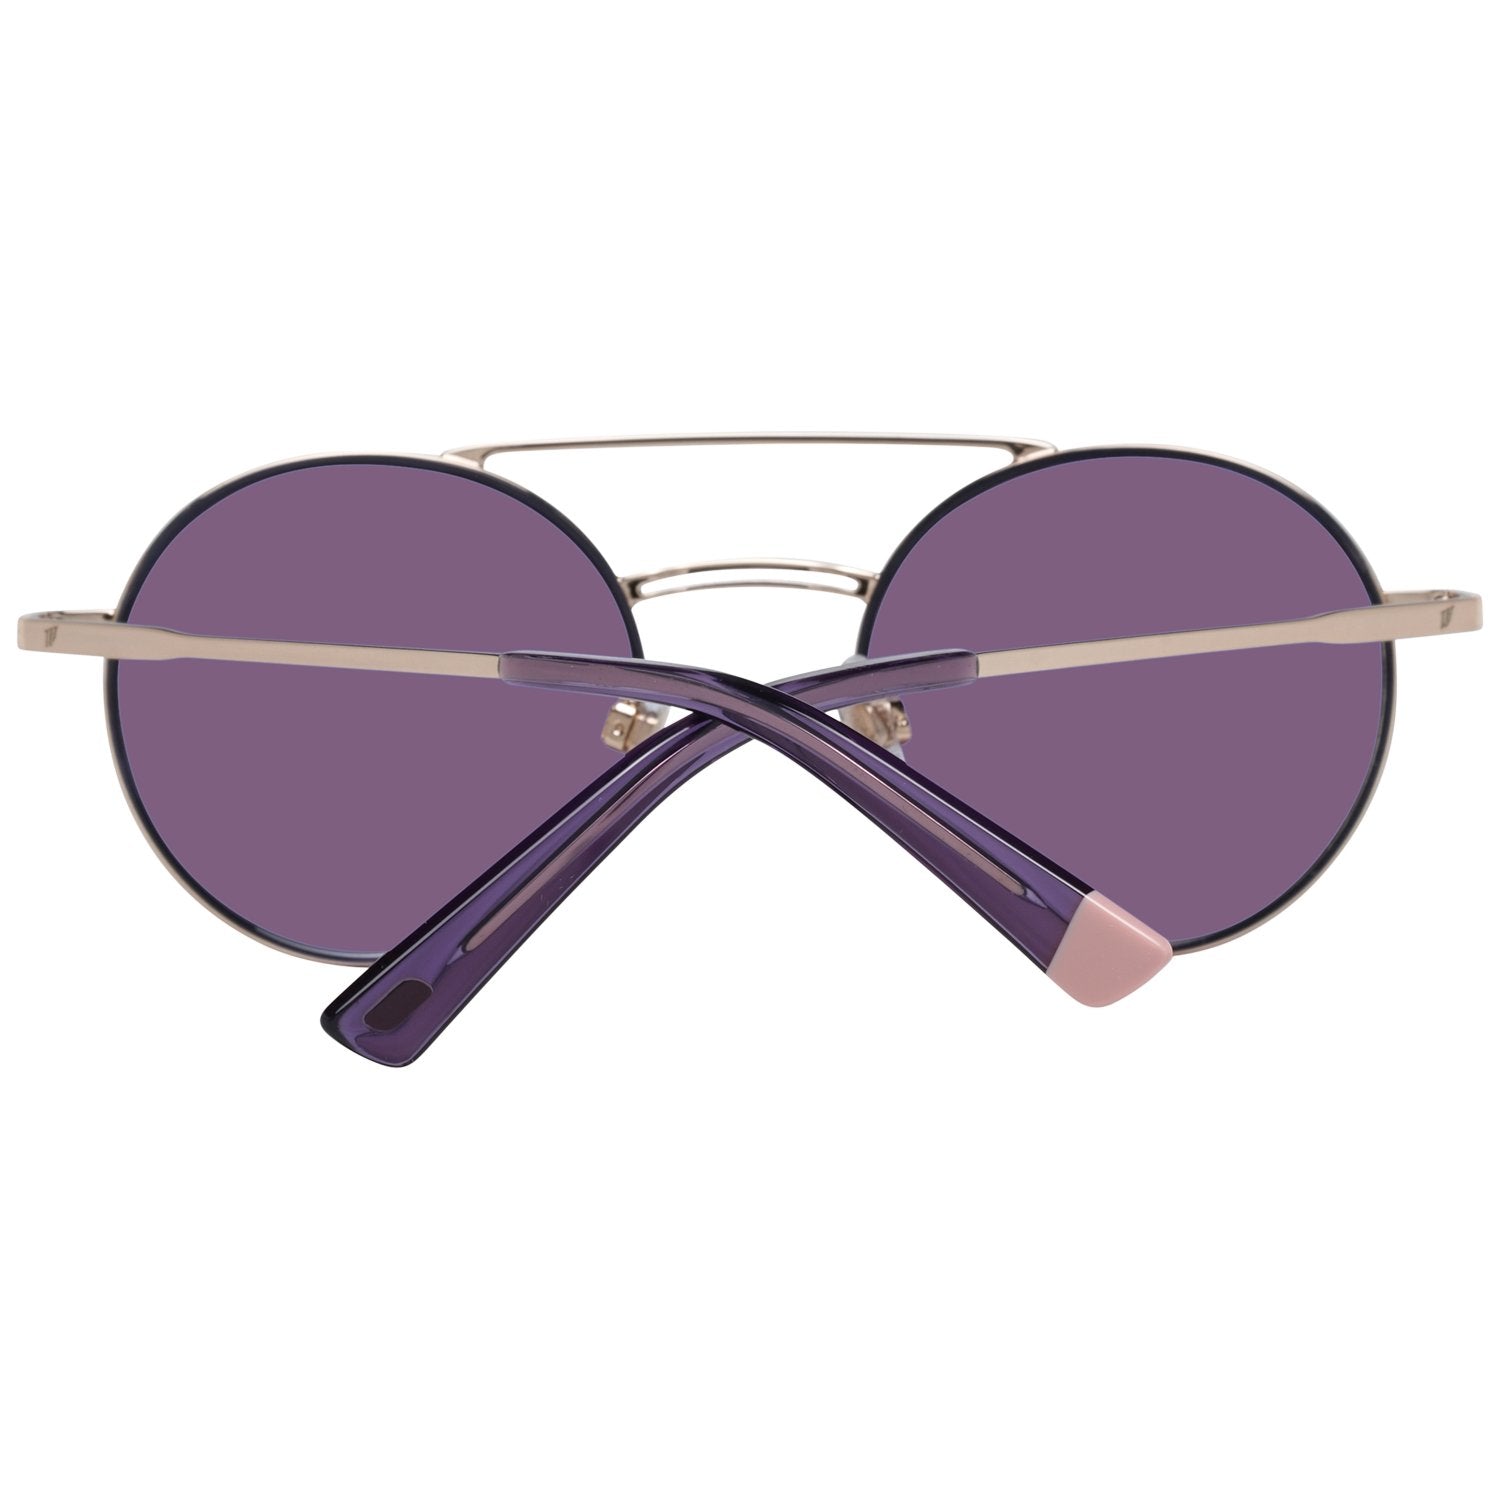 Web Gold Sunglasses for Woman - Fizigo